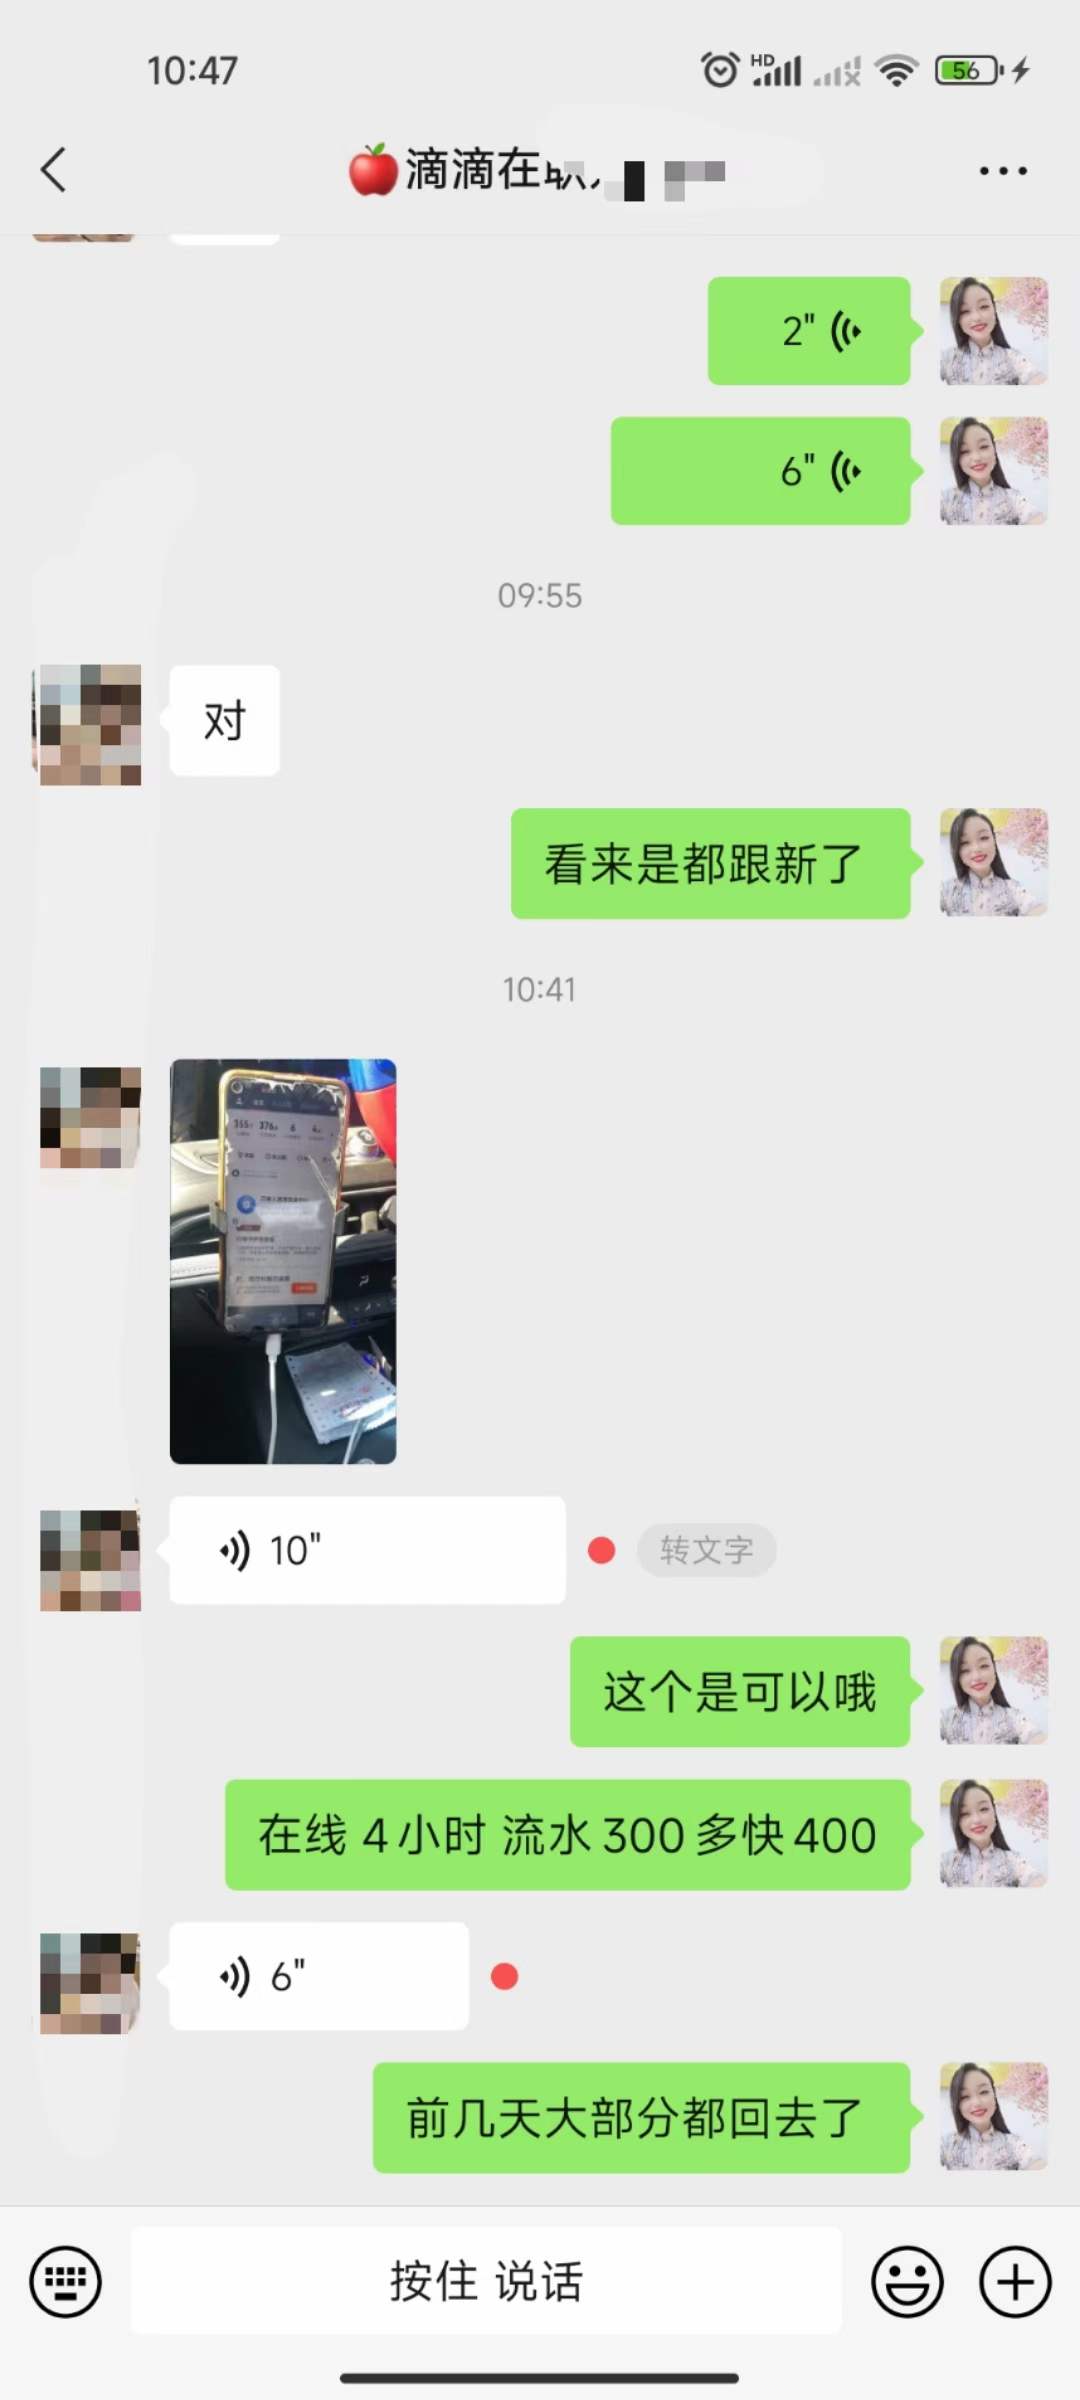 主变量在上海做网约车的司机怎么样上海现在某滴生意怎么样行业曝光